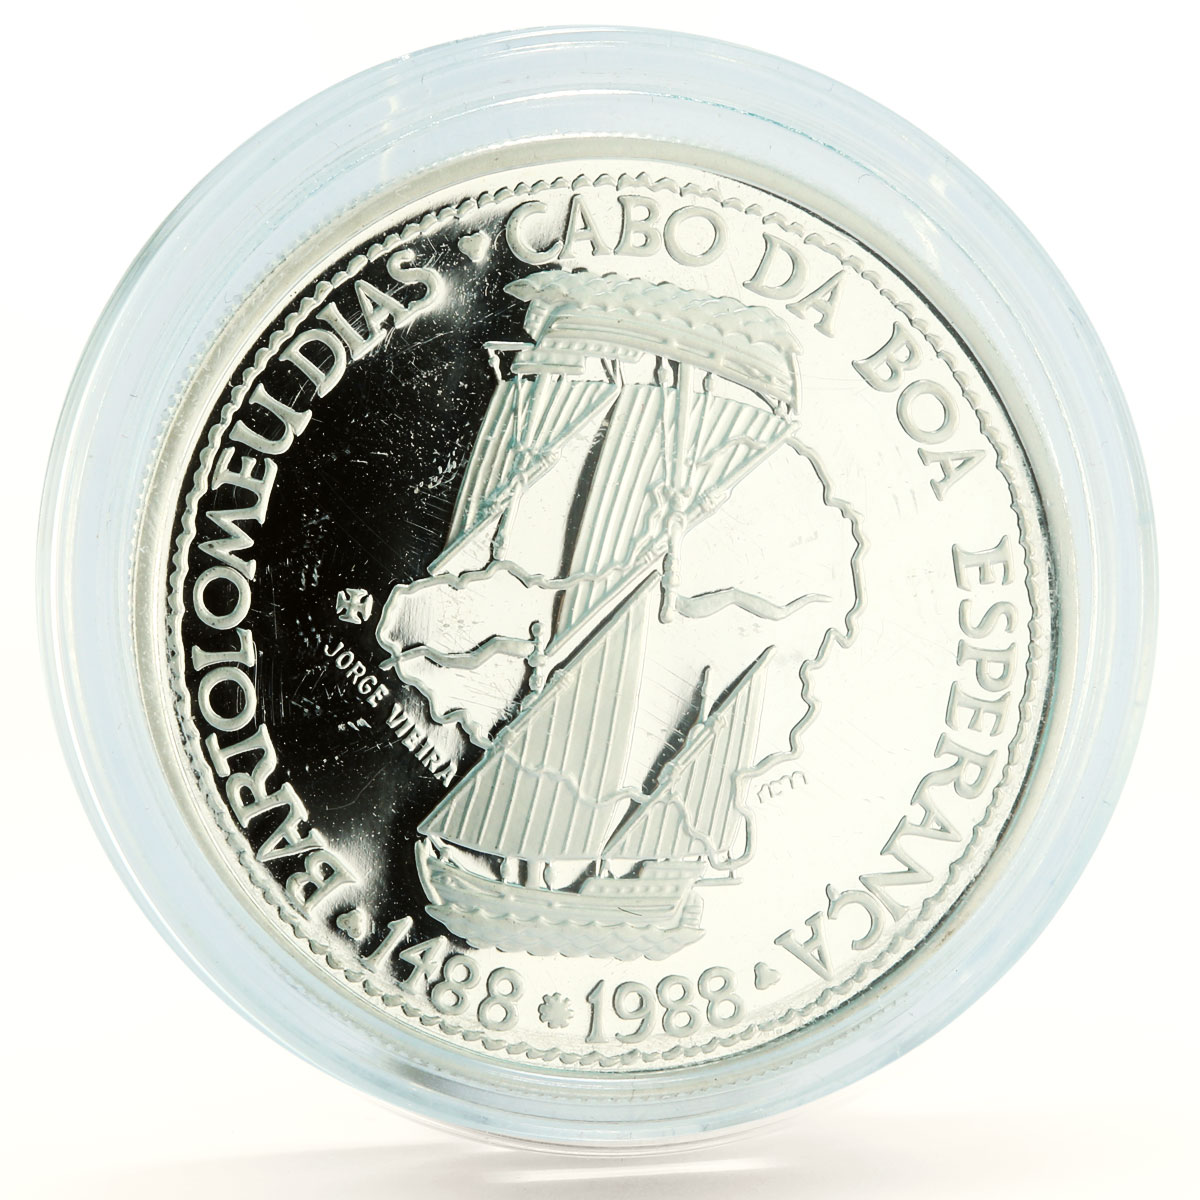 Portugal 100 escudos Bartolomeu Dias Ship Circumnavigation silver coin 1988